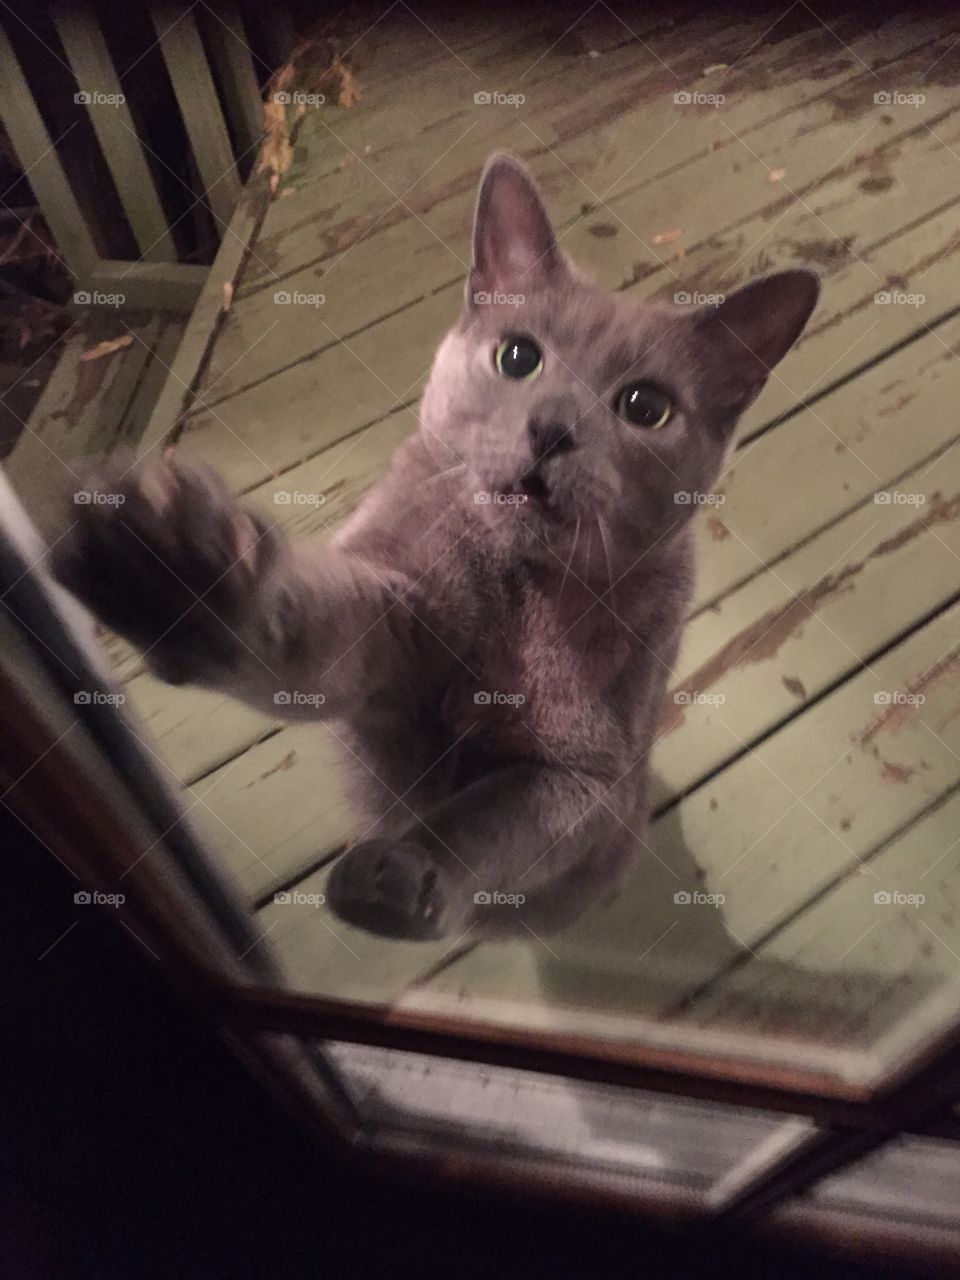 Please open the door 